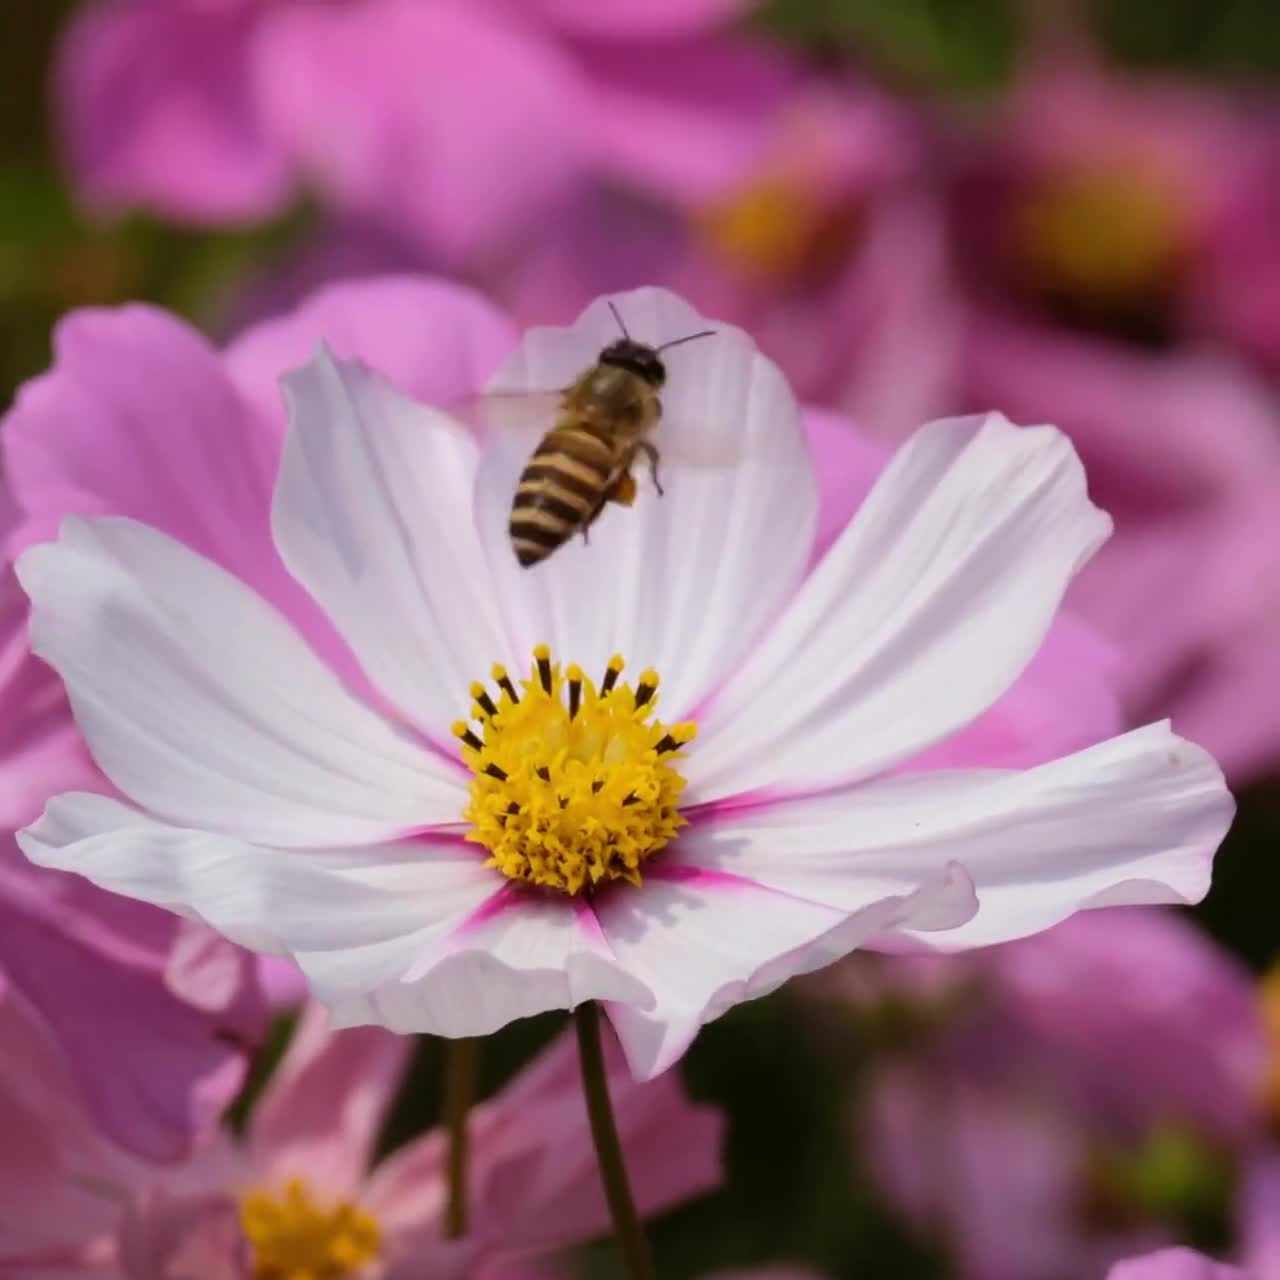  Polen de abeja 100% puro y natural gránulos de polen